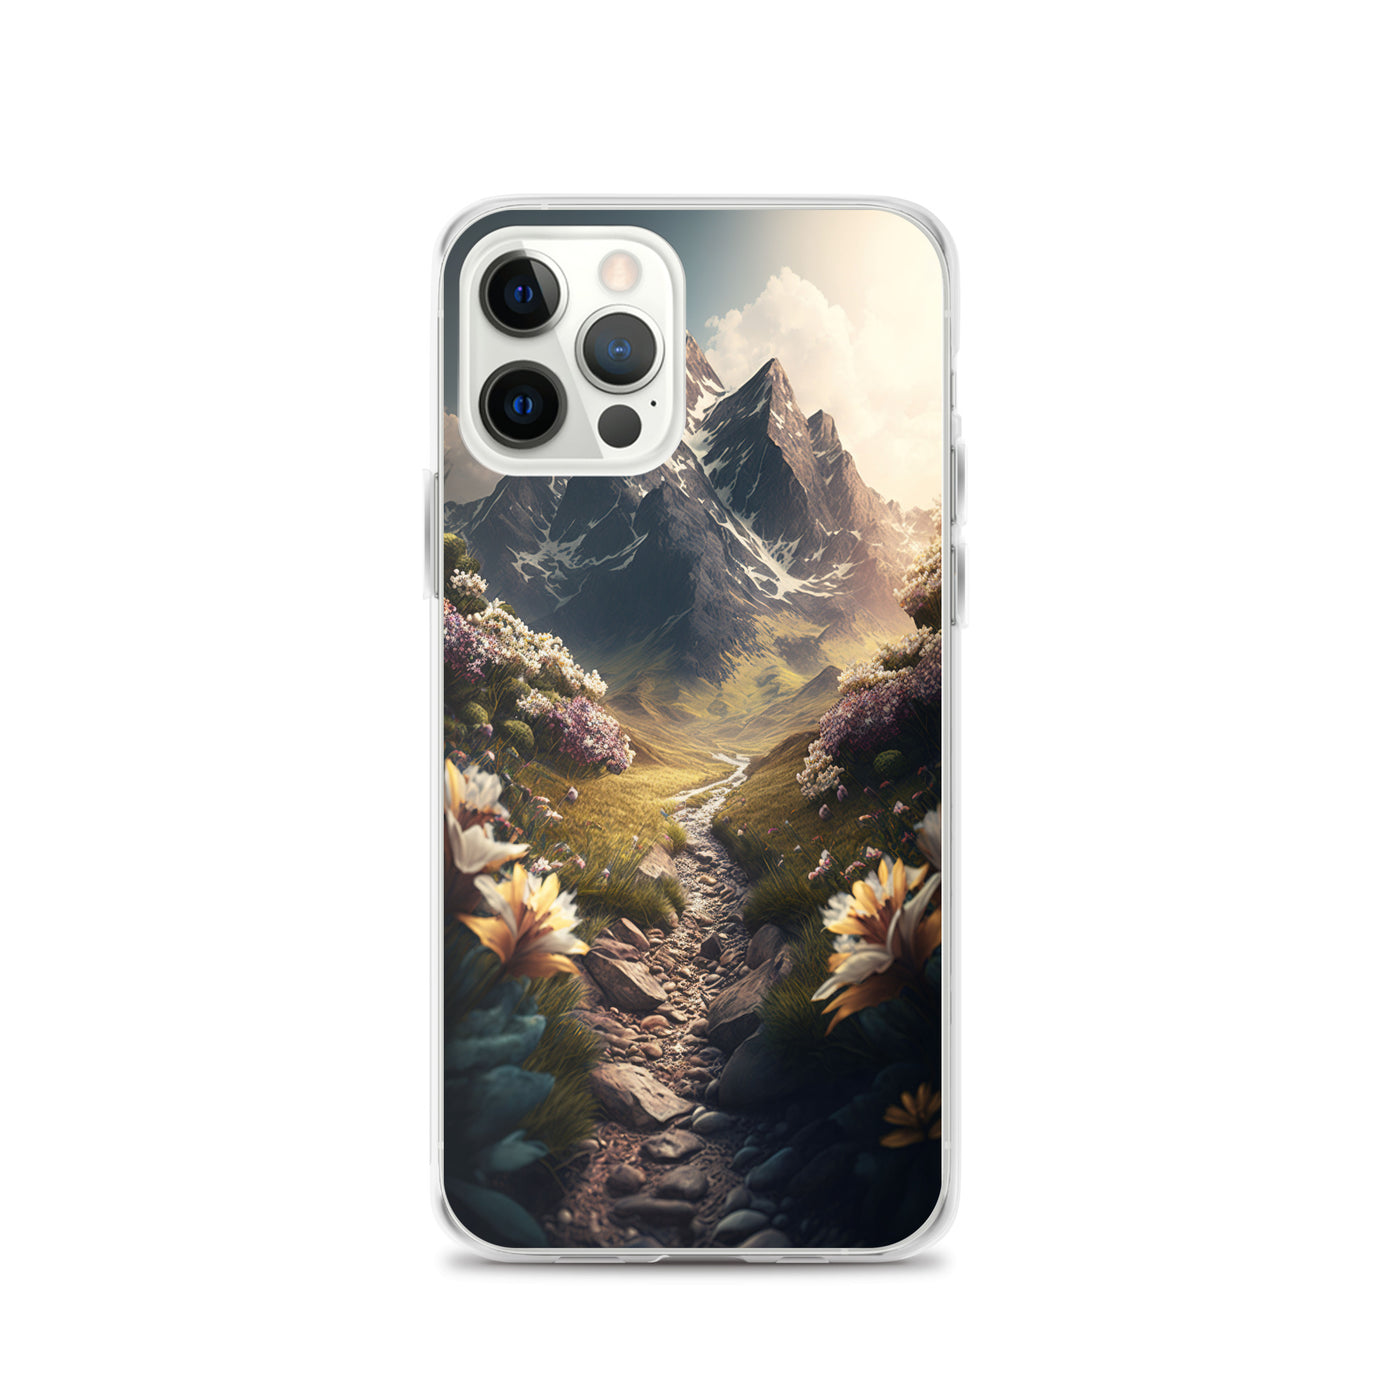 Epischer Berg, steiniger Weg und Blumen - Realistische Malerei - iPhone Schutzhülle (durchsichtig) berge xxx iPhone 12 Pro